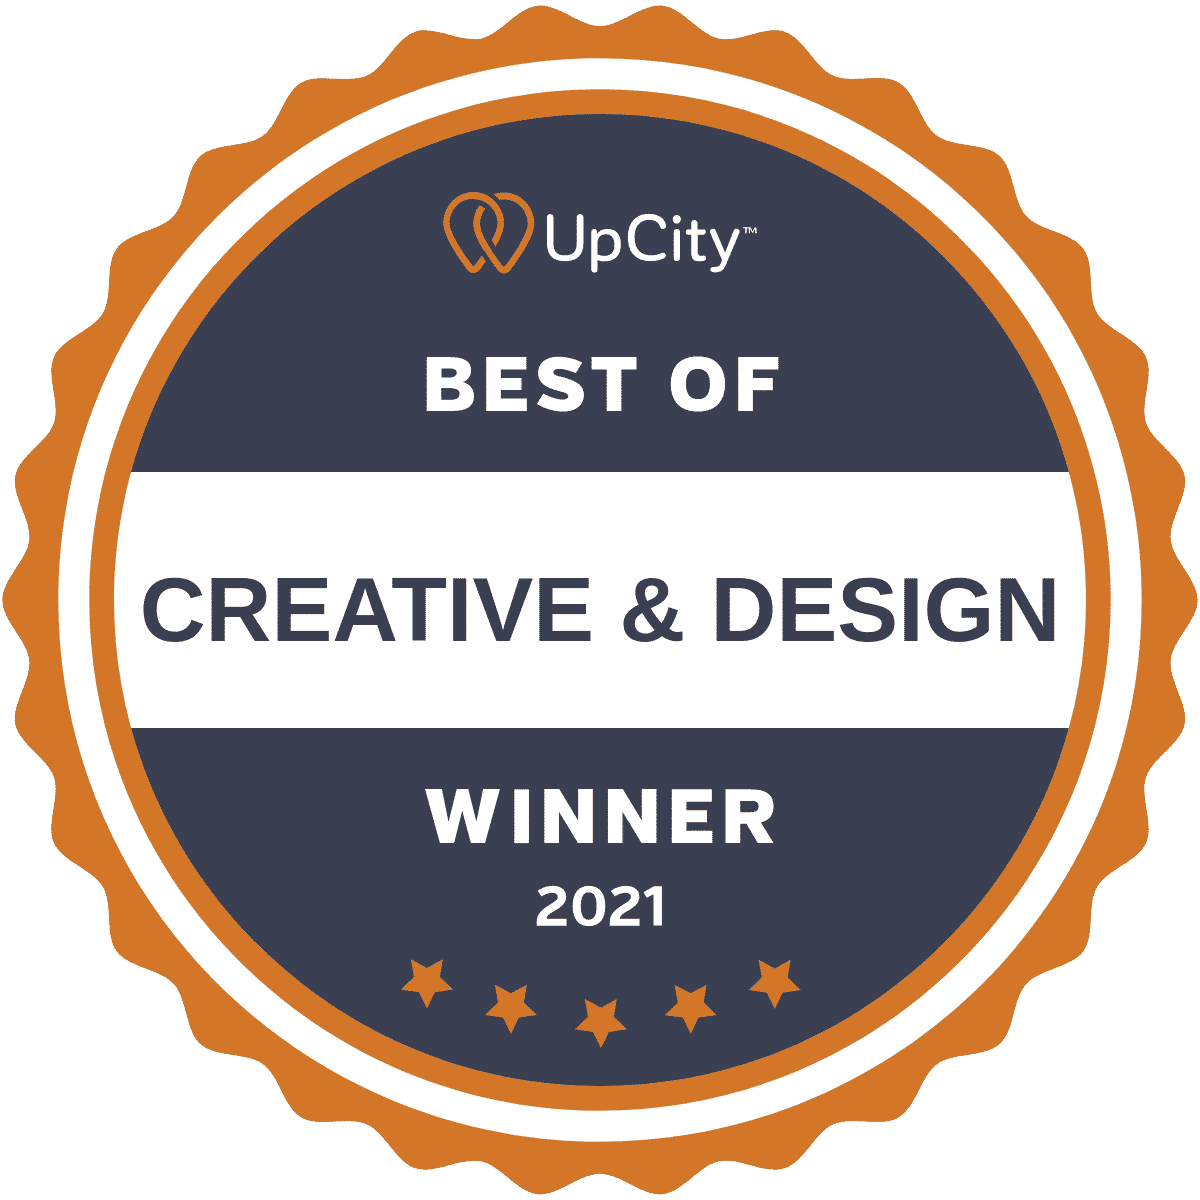 An award logo that reads "UpCity Best of Creative & Design winner 2021."